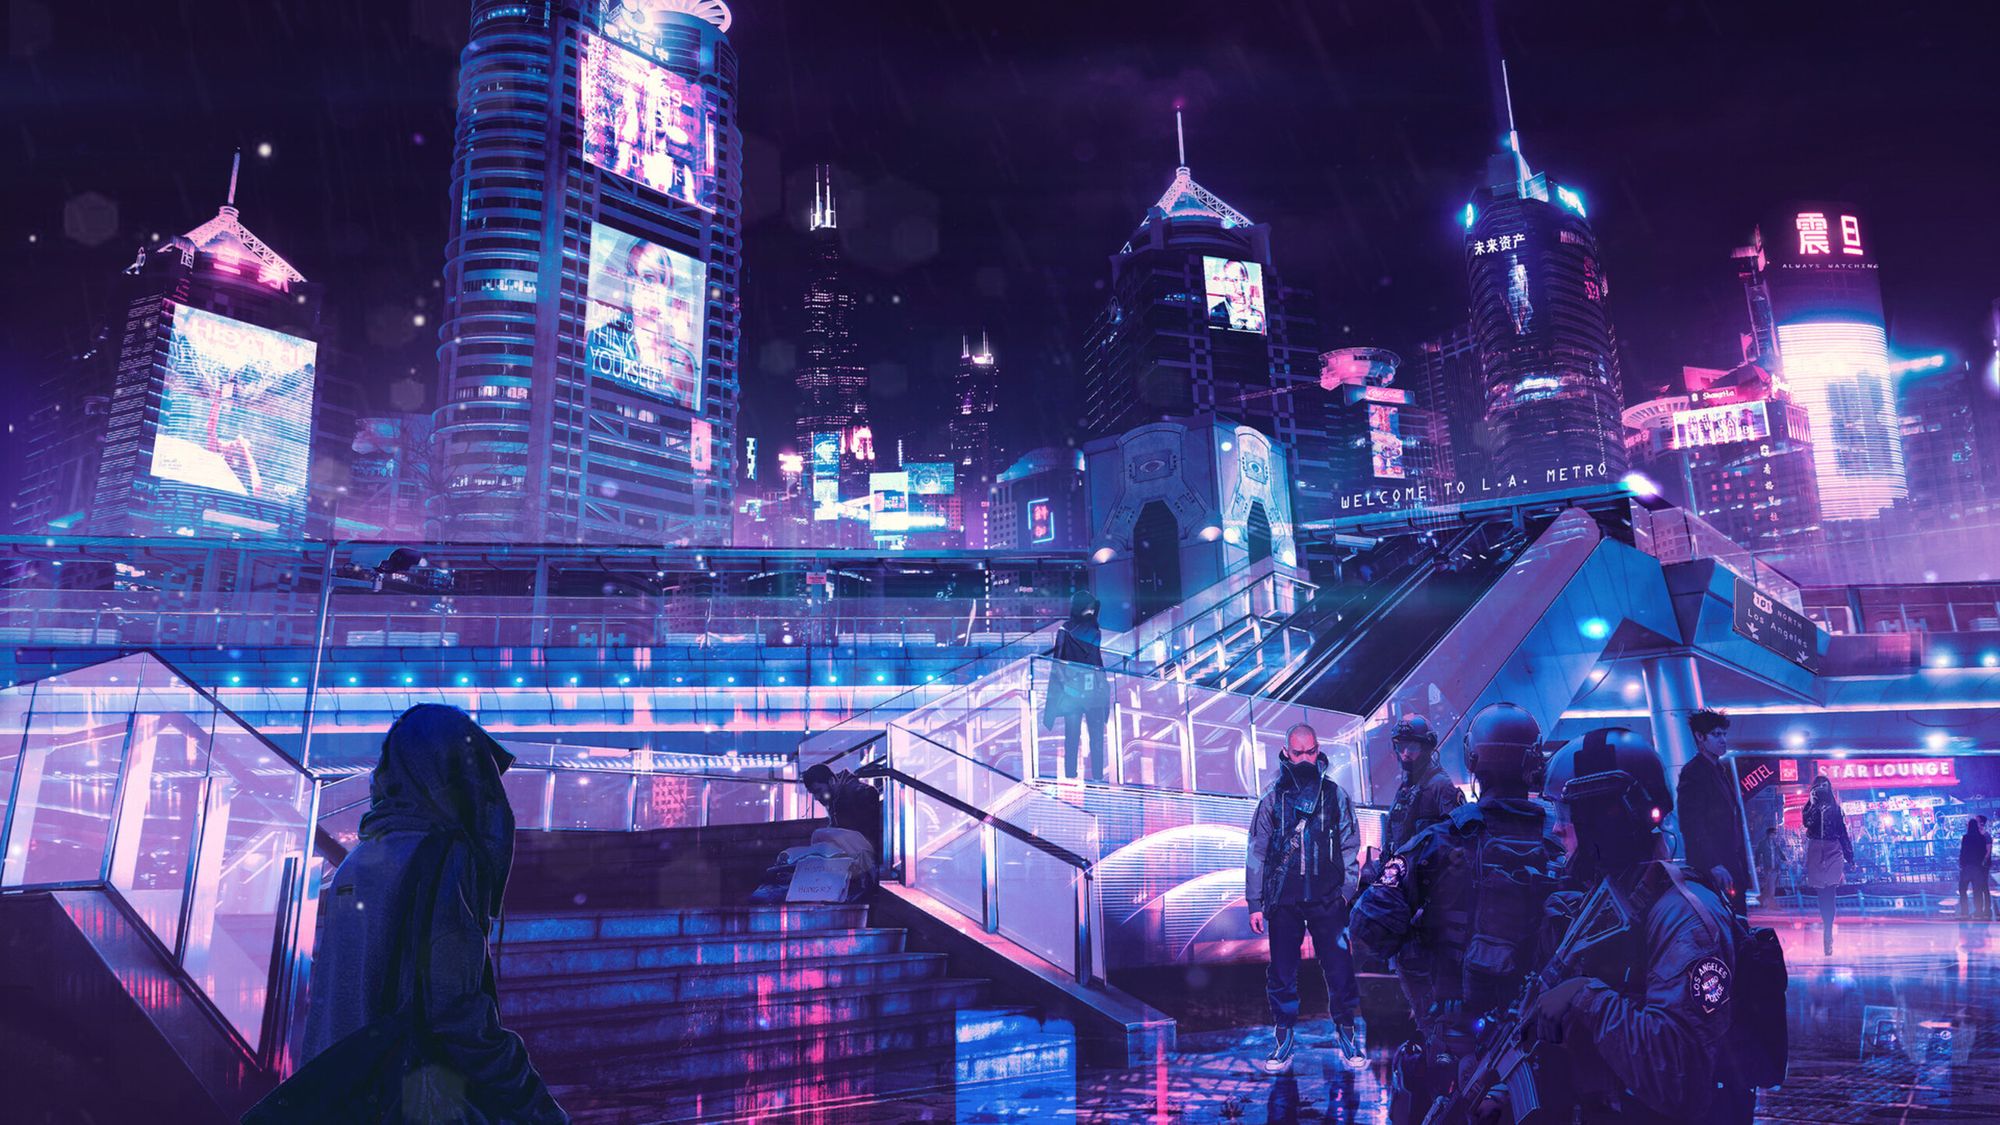 cyberpunk-neon-city-s0-2560x1440